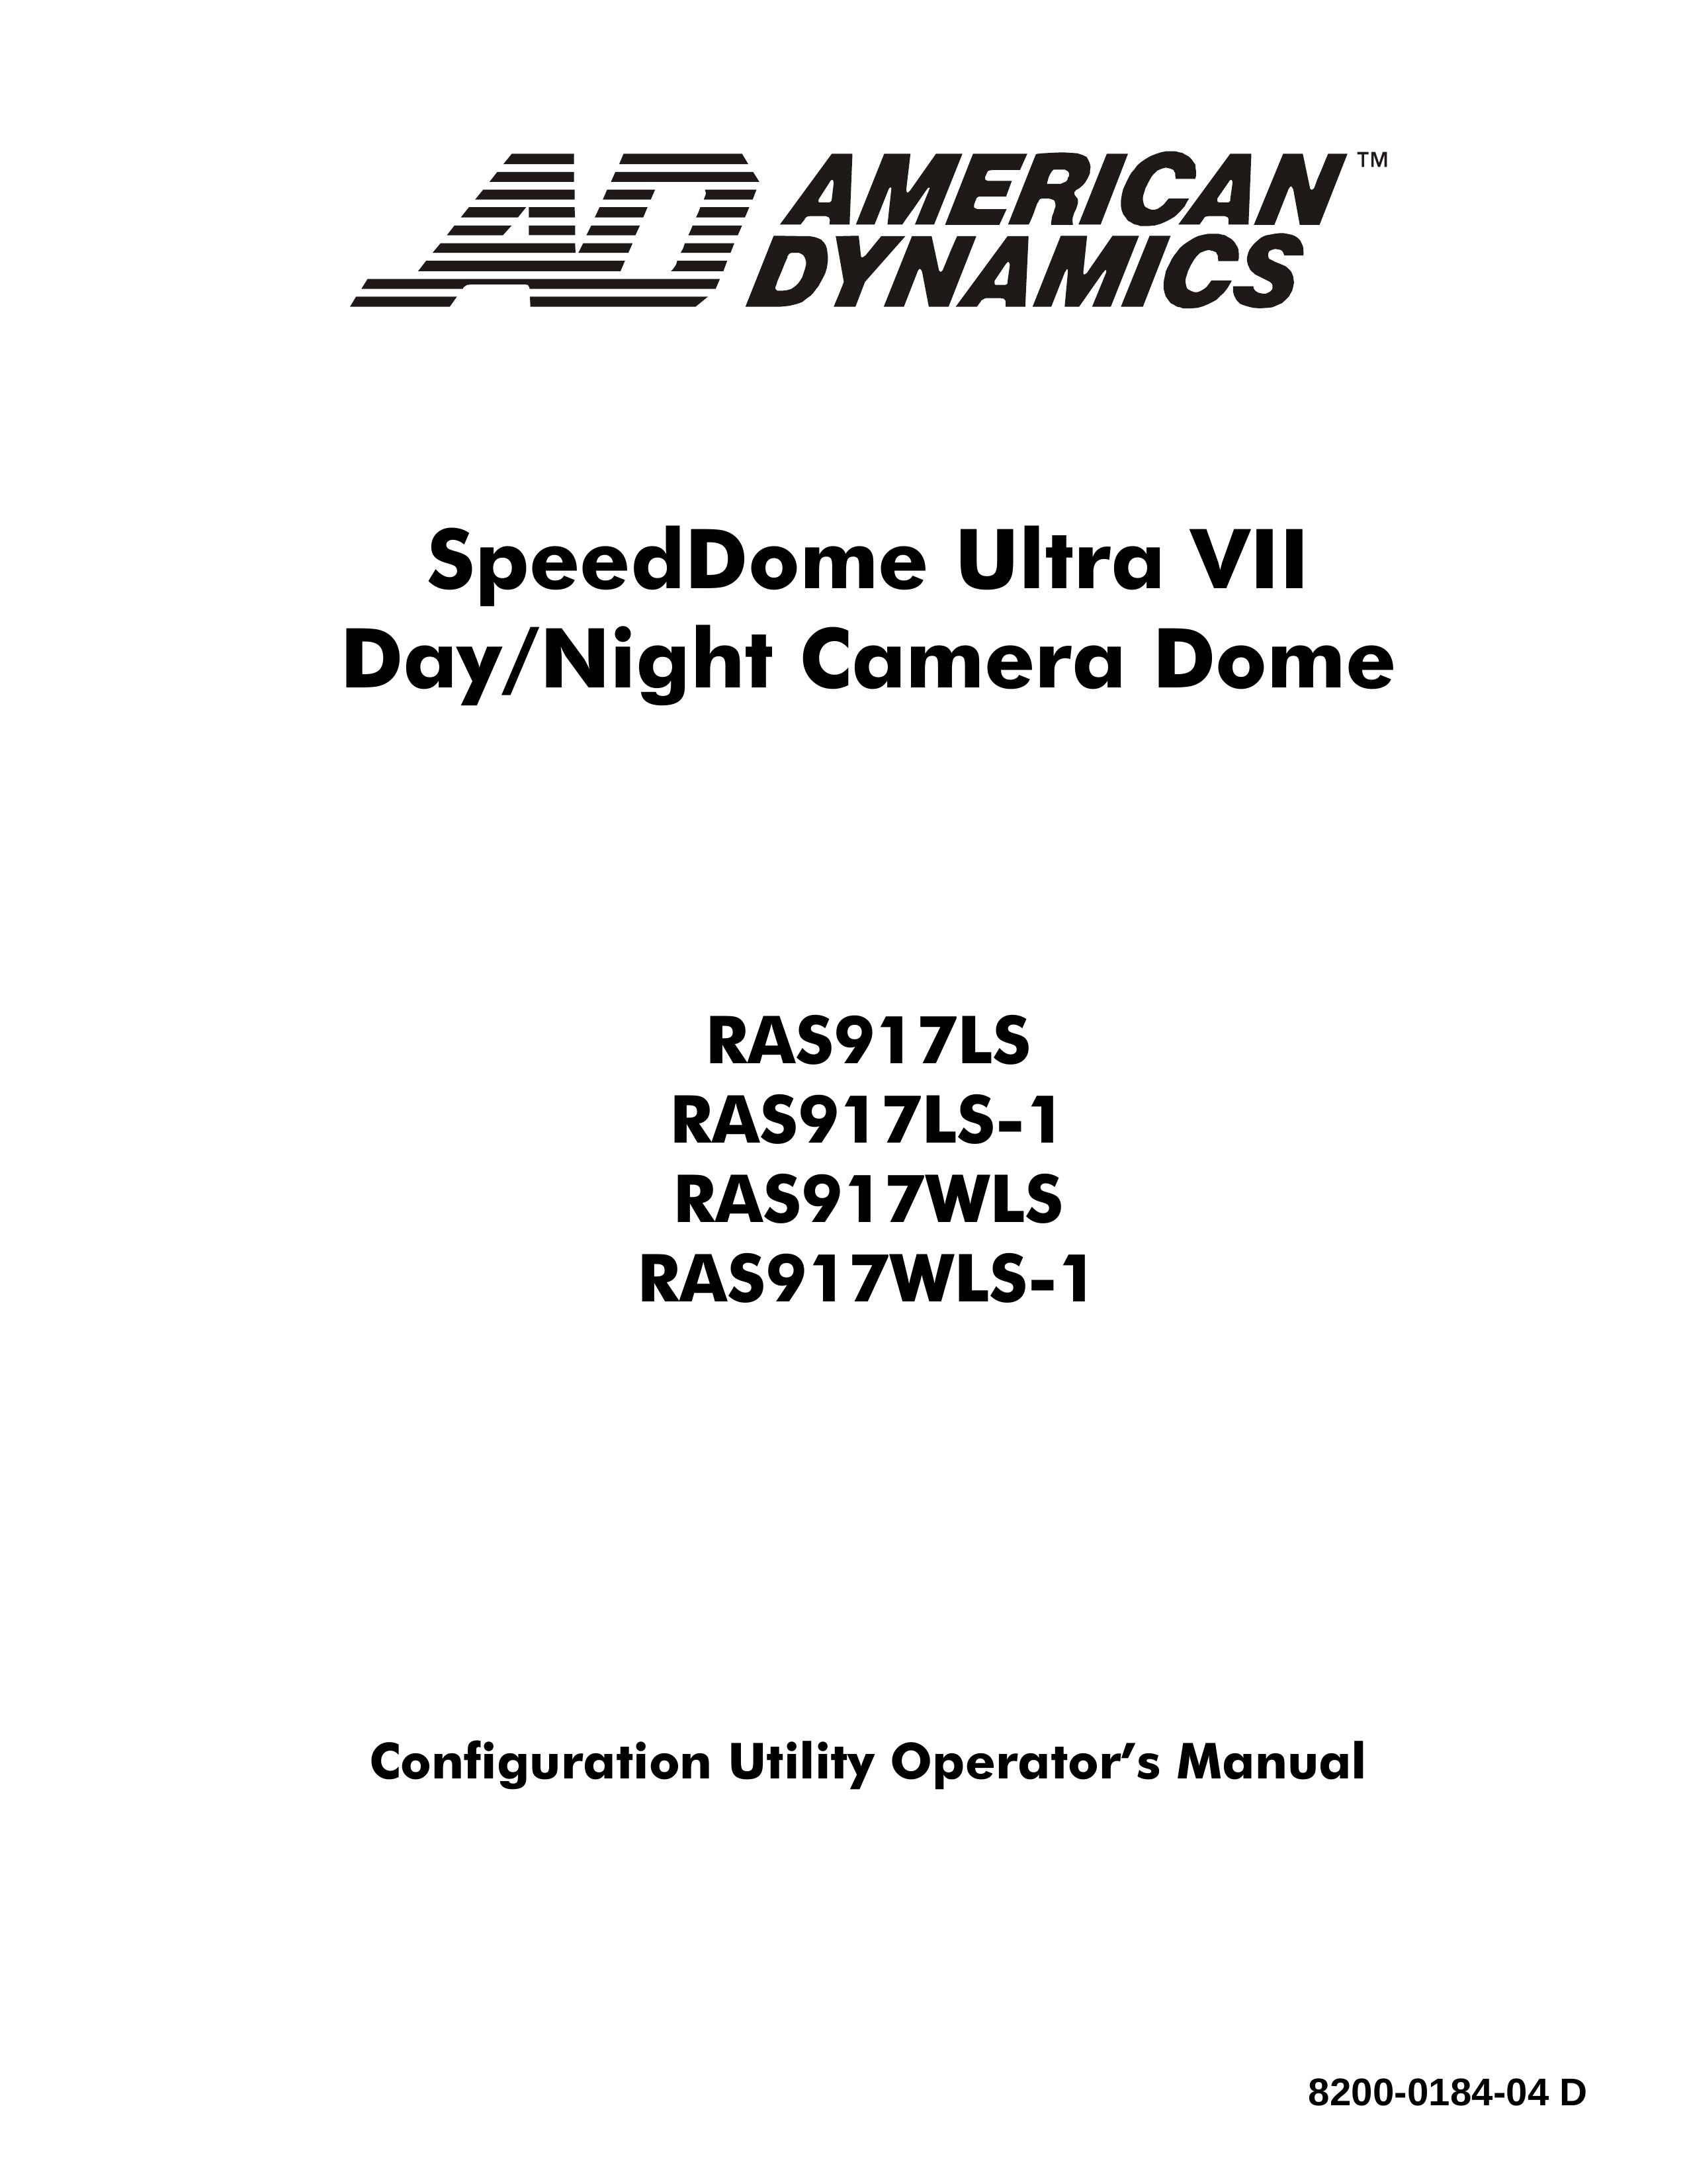 American Dynamics RAS917WLS-1 Security Camera User Manual